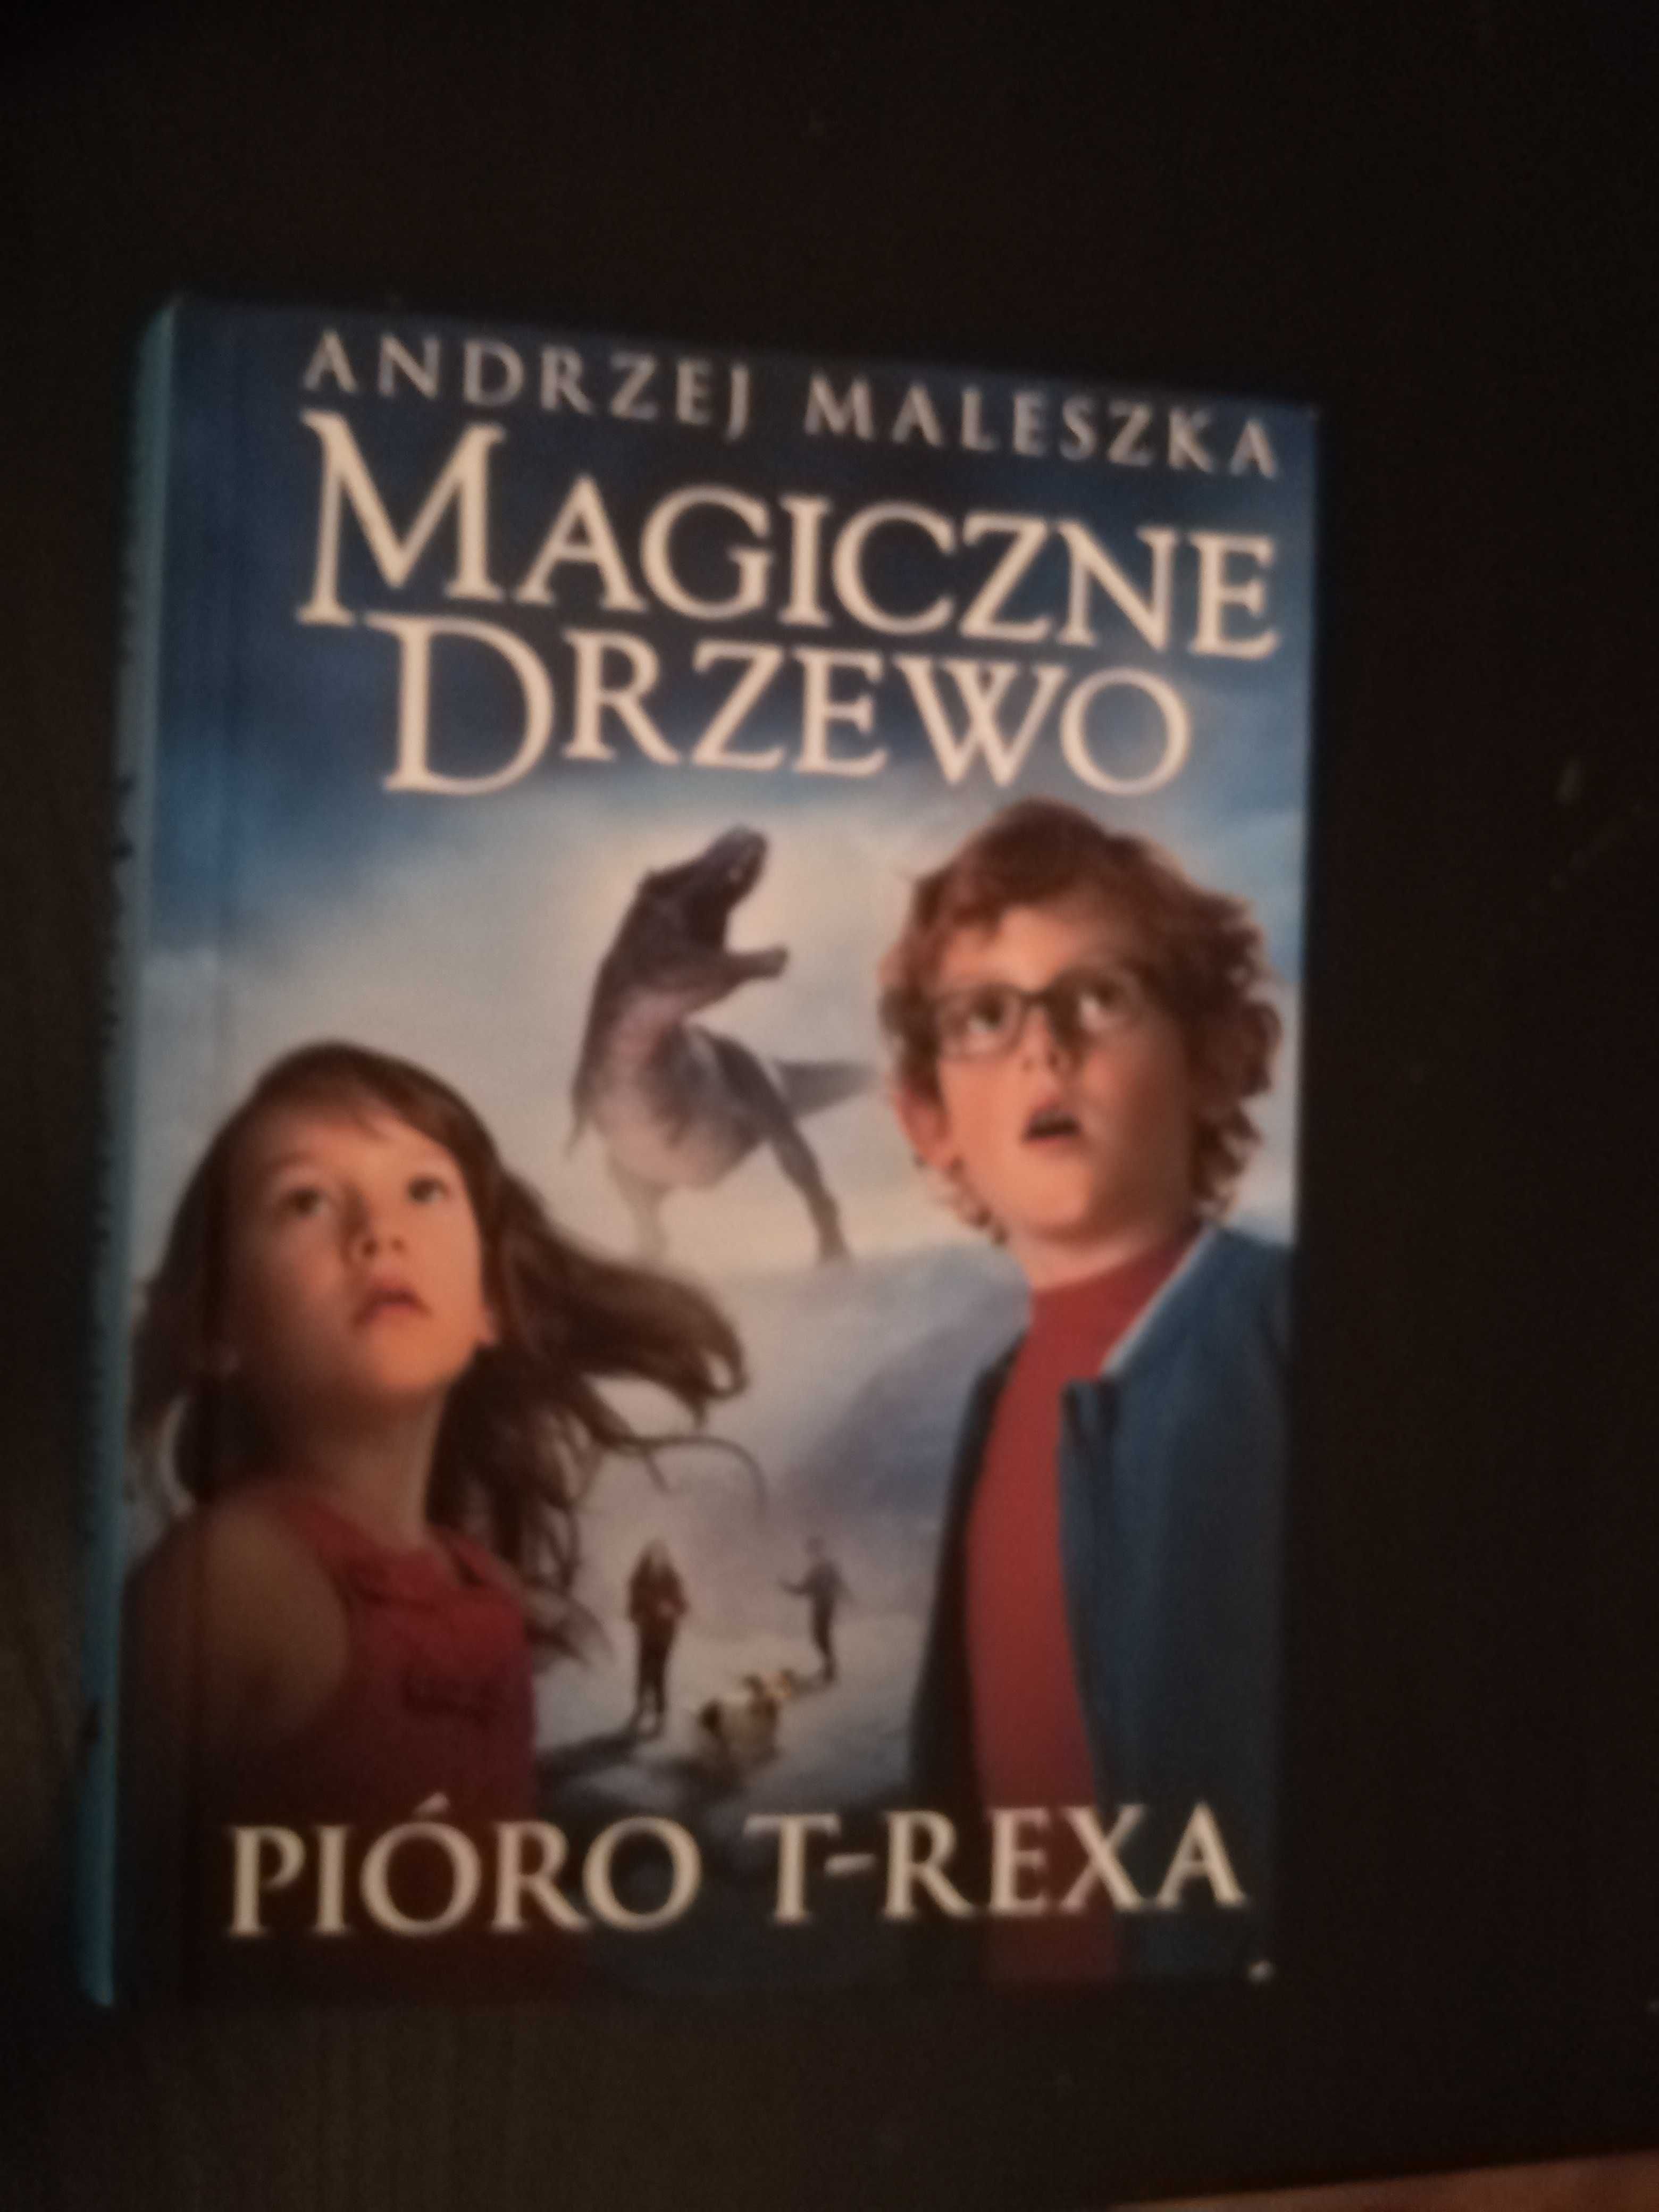 Książka z serii magiczne drzewo pt. Pióro t-rexa